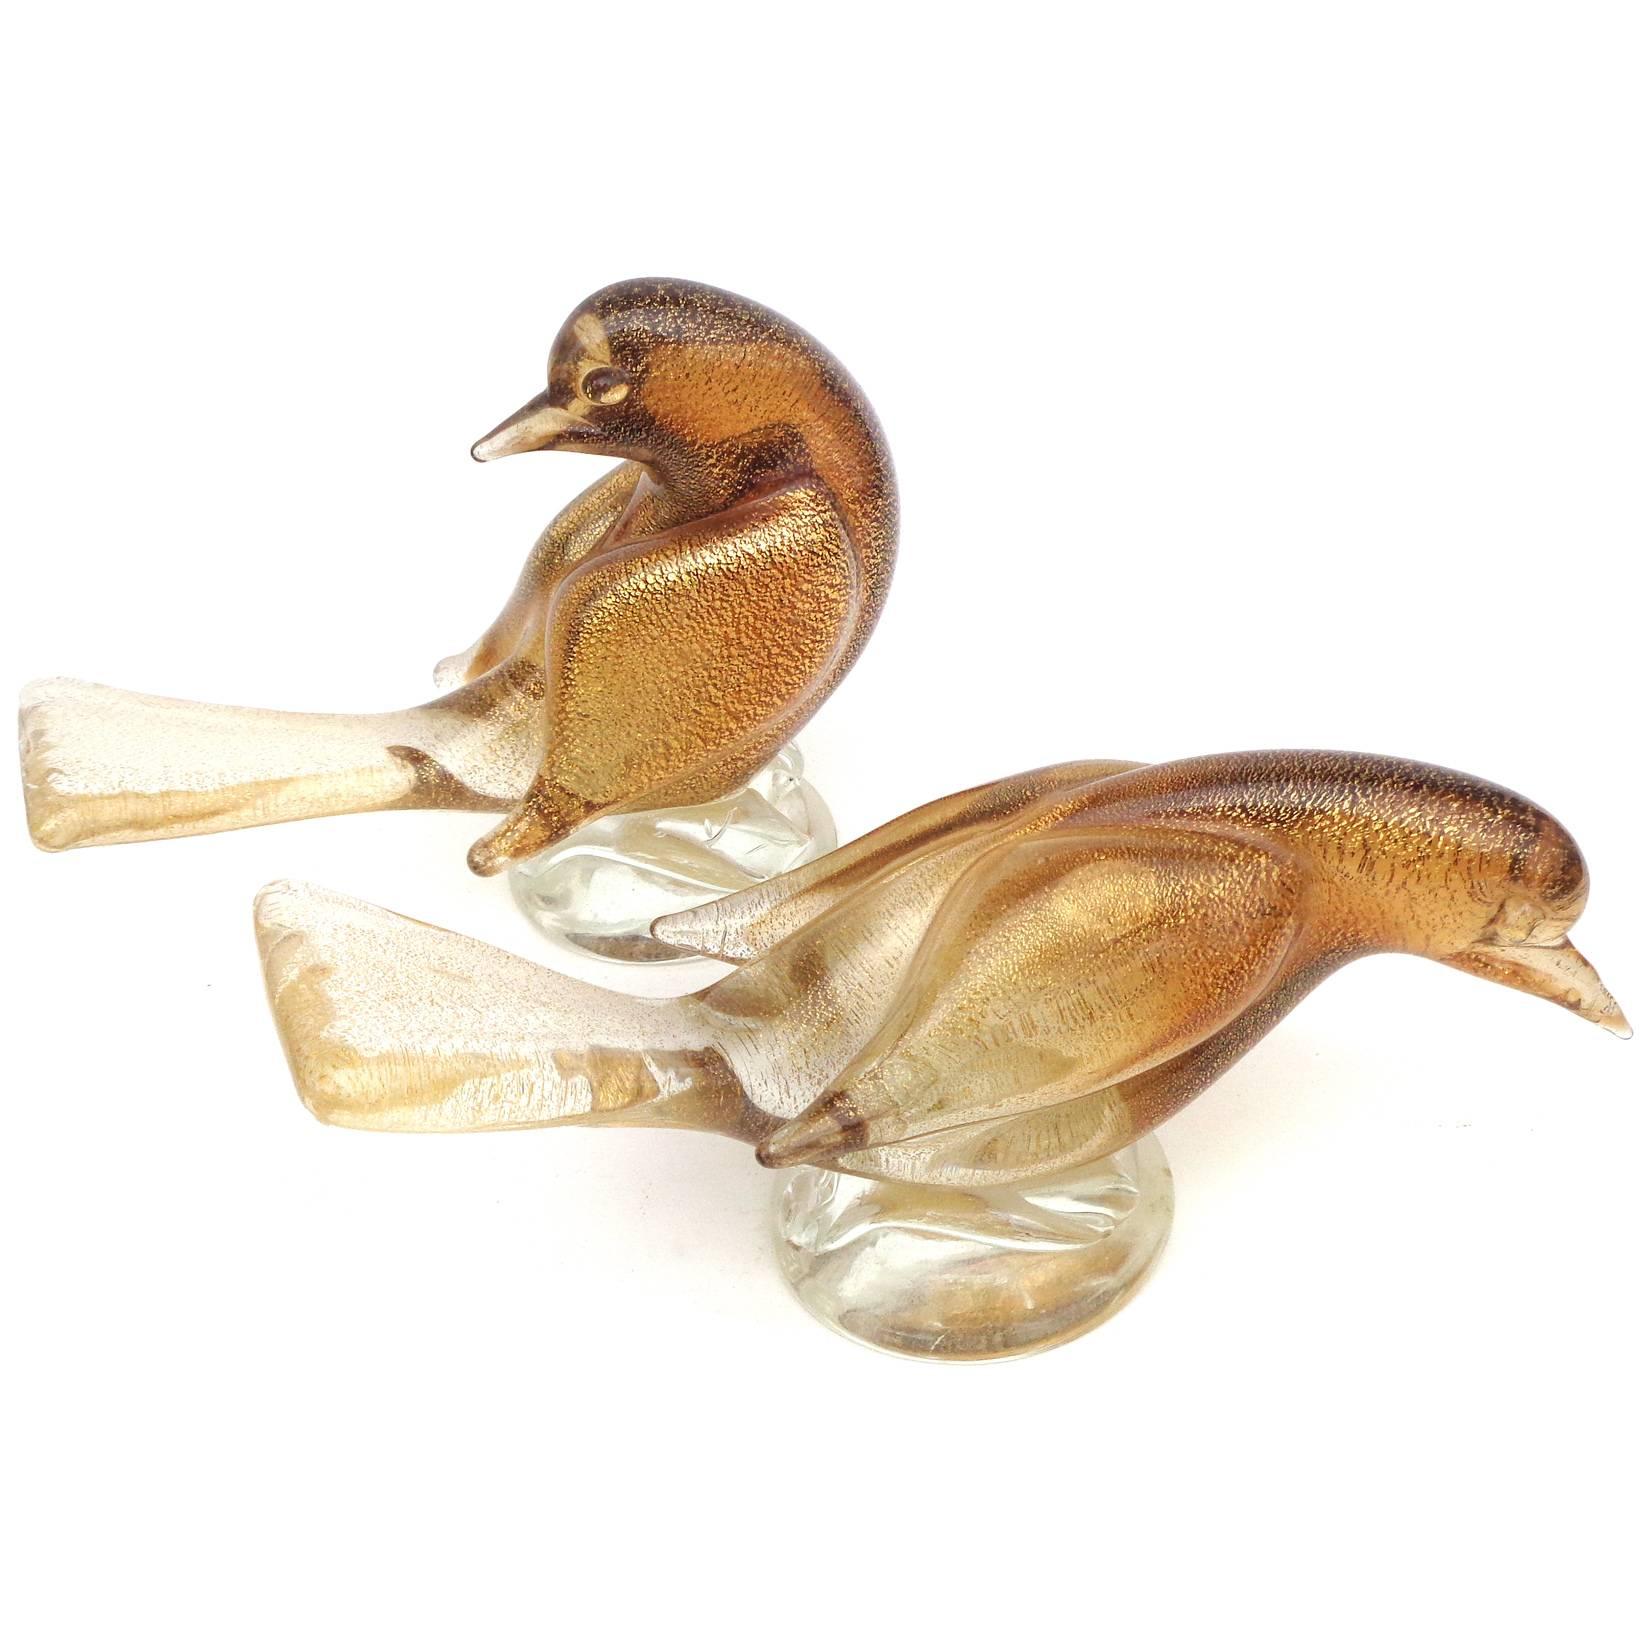 Magnifique ensemble de sculptures / figurines d'oiseaux colombes en verre soufflé à la bouche Sommerso de Murano, ambre et mouchetures d'or. Documenté au designer Archimede Seguso, avec les labels originaux en dessous. Ce serait une belle pièce